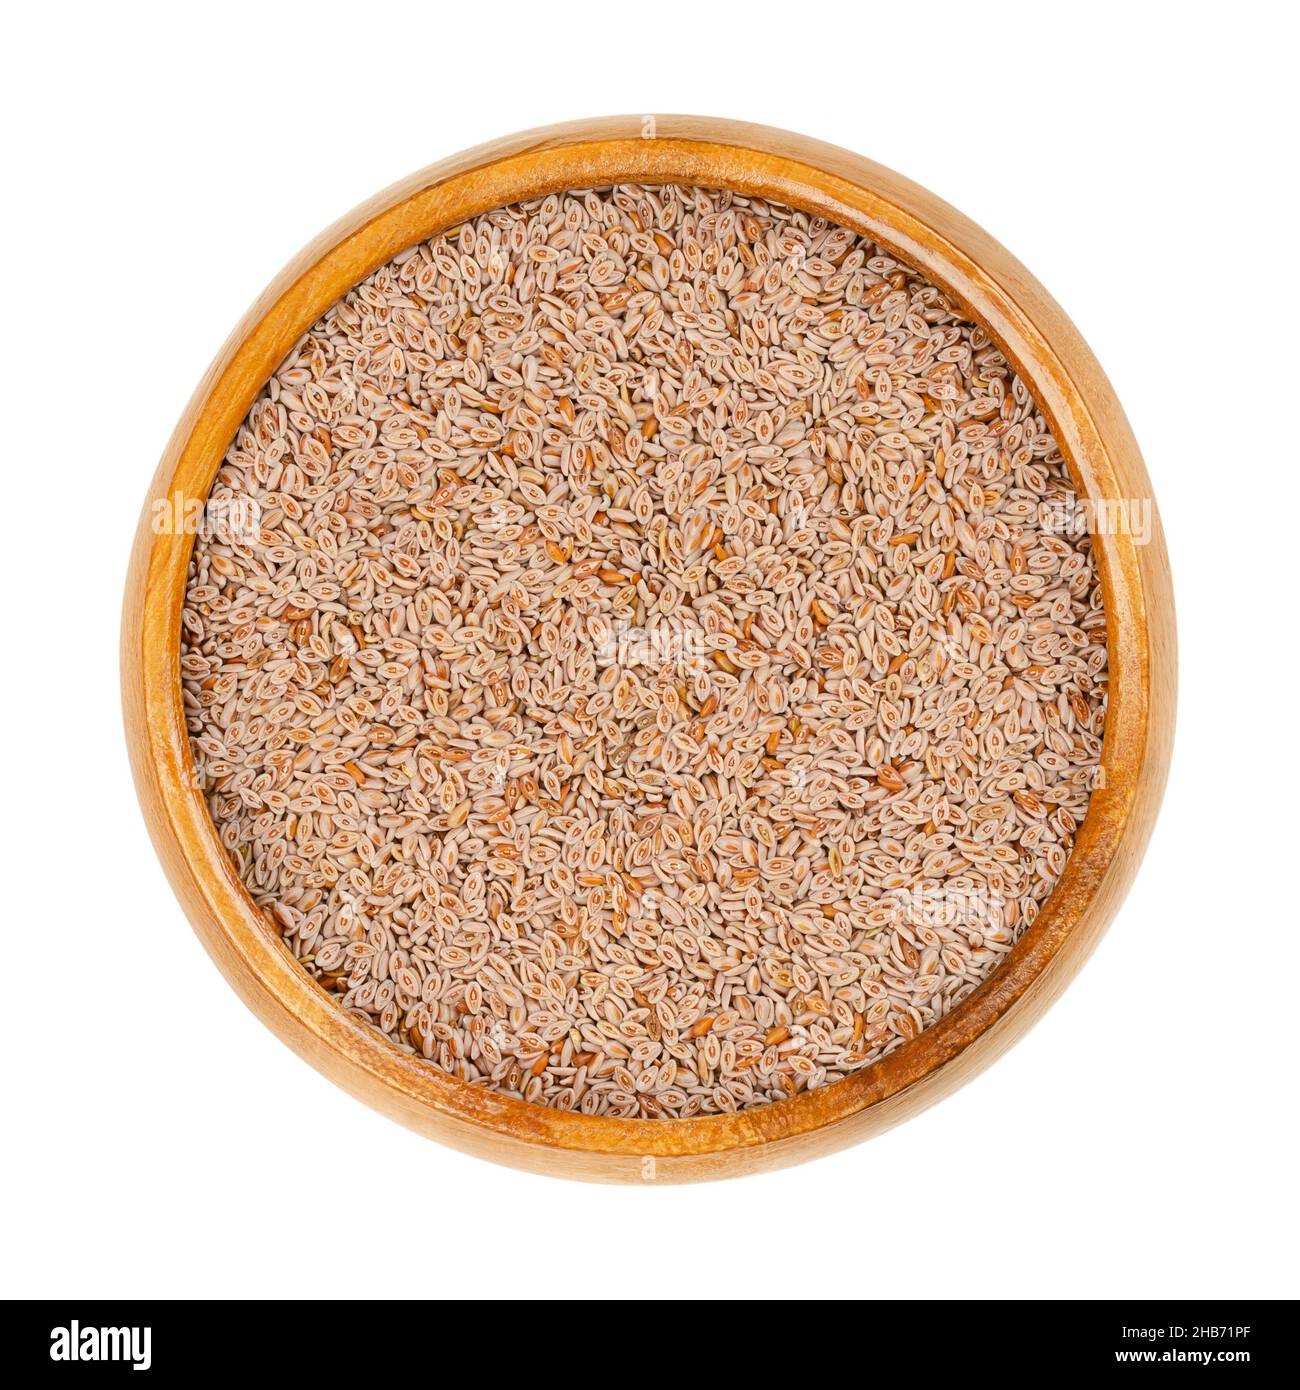 Graines de psyllium entières, dans un bol en bois.Plantago ovata, connue sous le nom de plantain blond, de blé indien du désert, de psyllium blond et d'ispagol. Banque D'Images